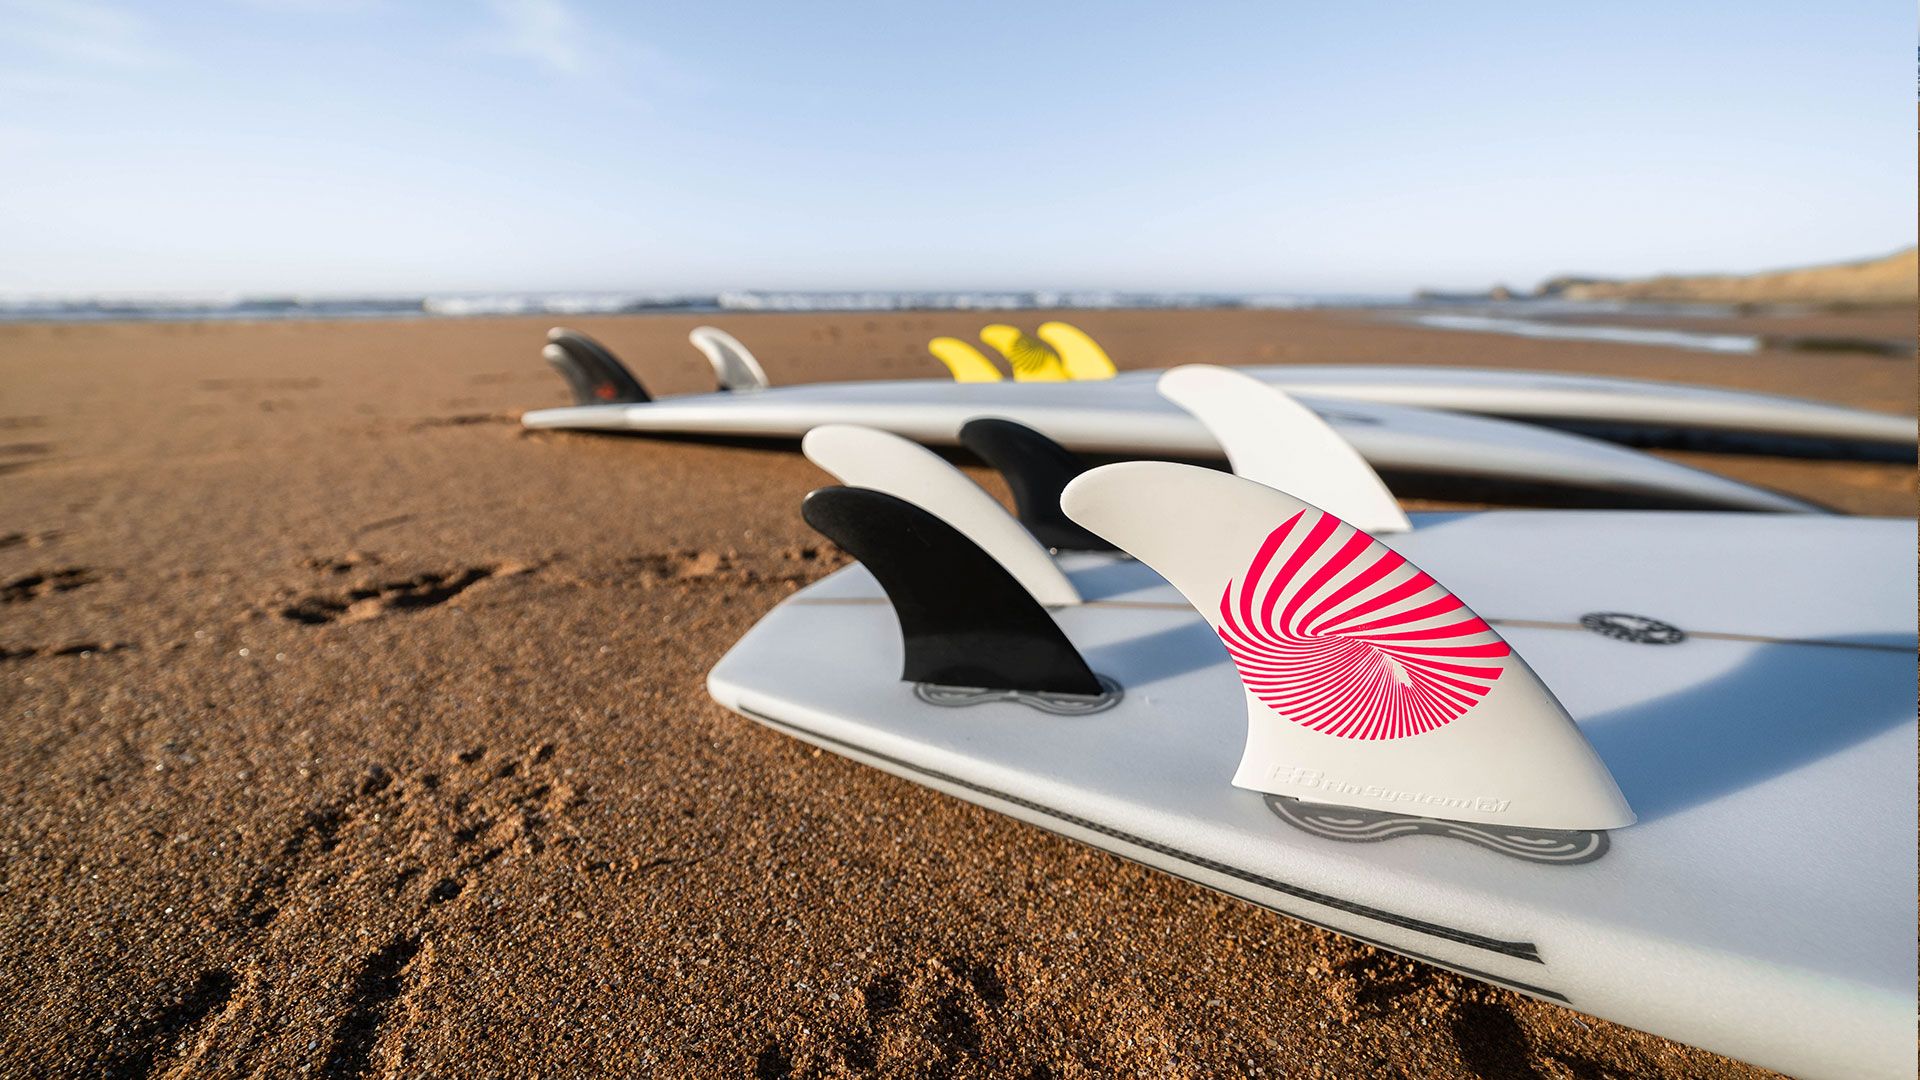 Quillas de surf y estabilizadores de la marca e8 fin system